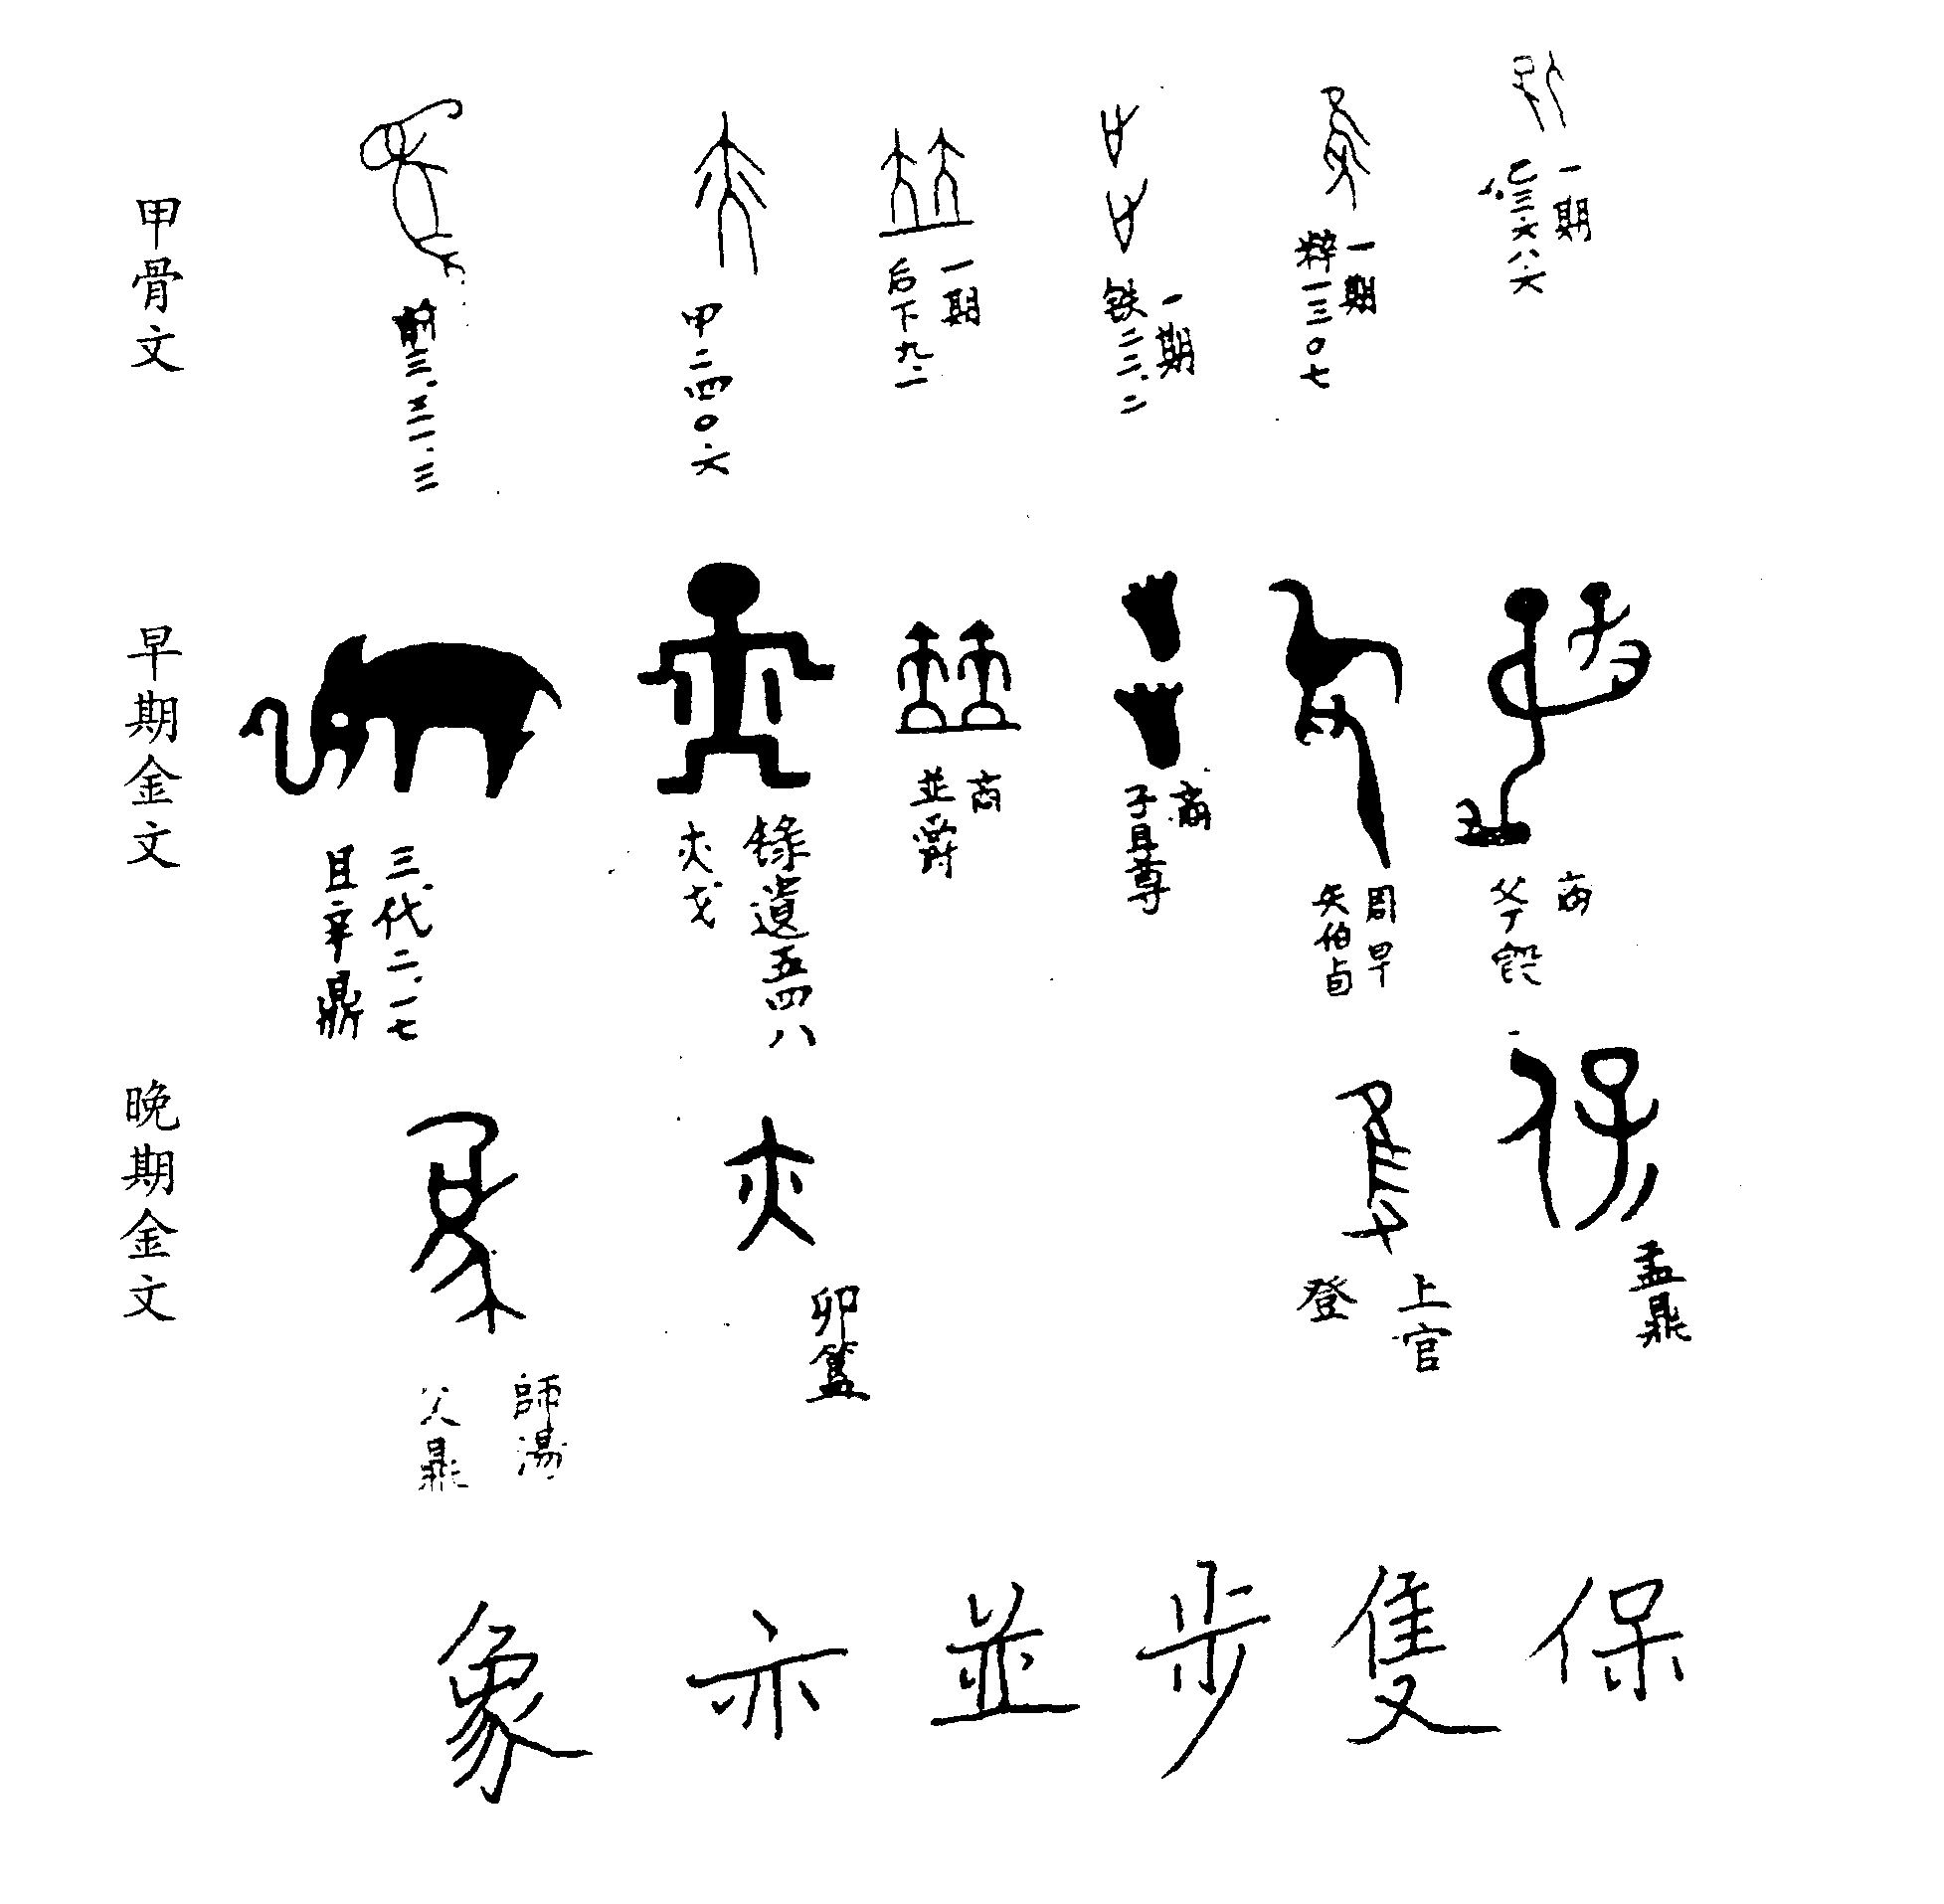 古汉字的一种字体,因铸刻在铜器而得名(周以前铜也称金)